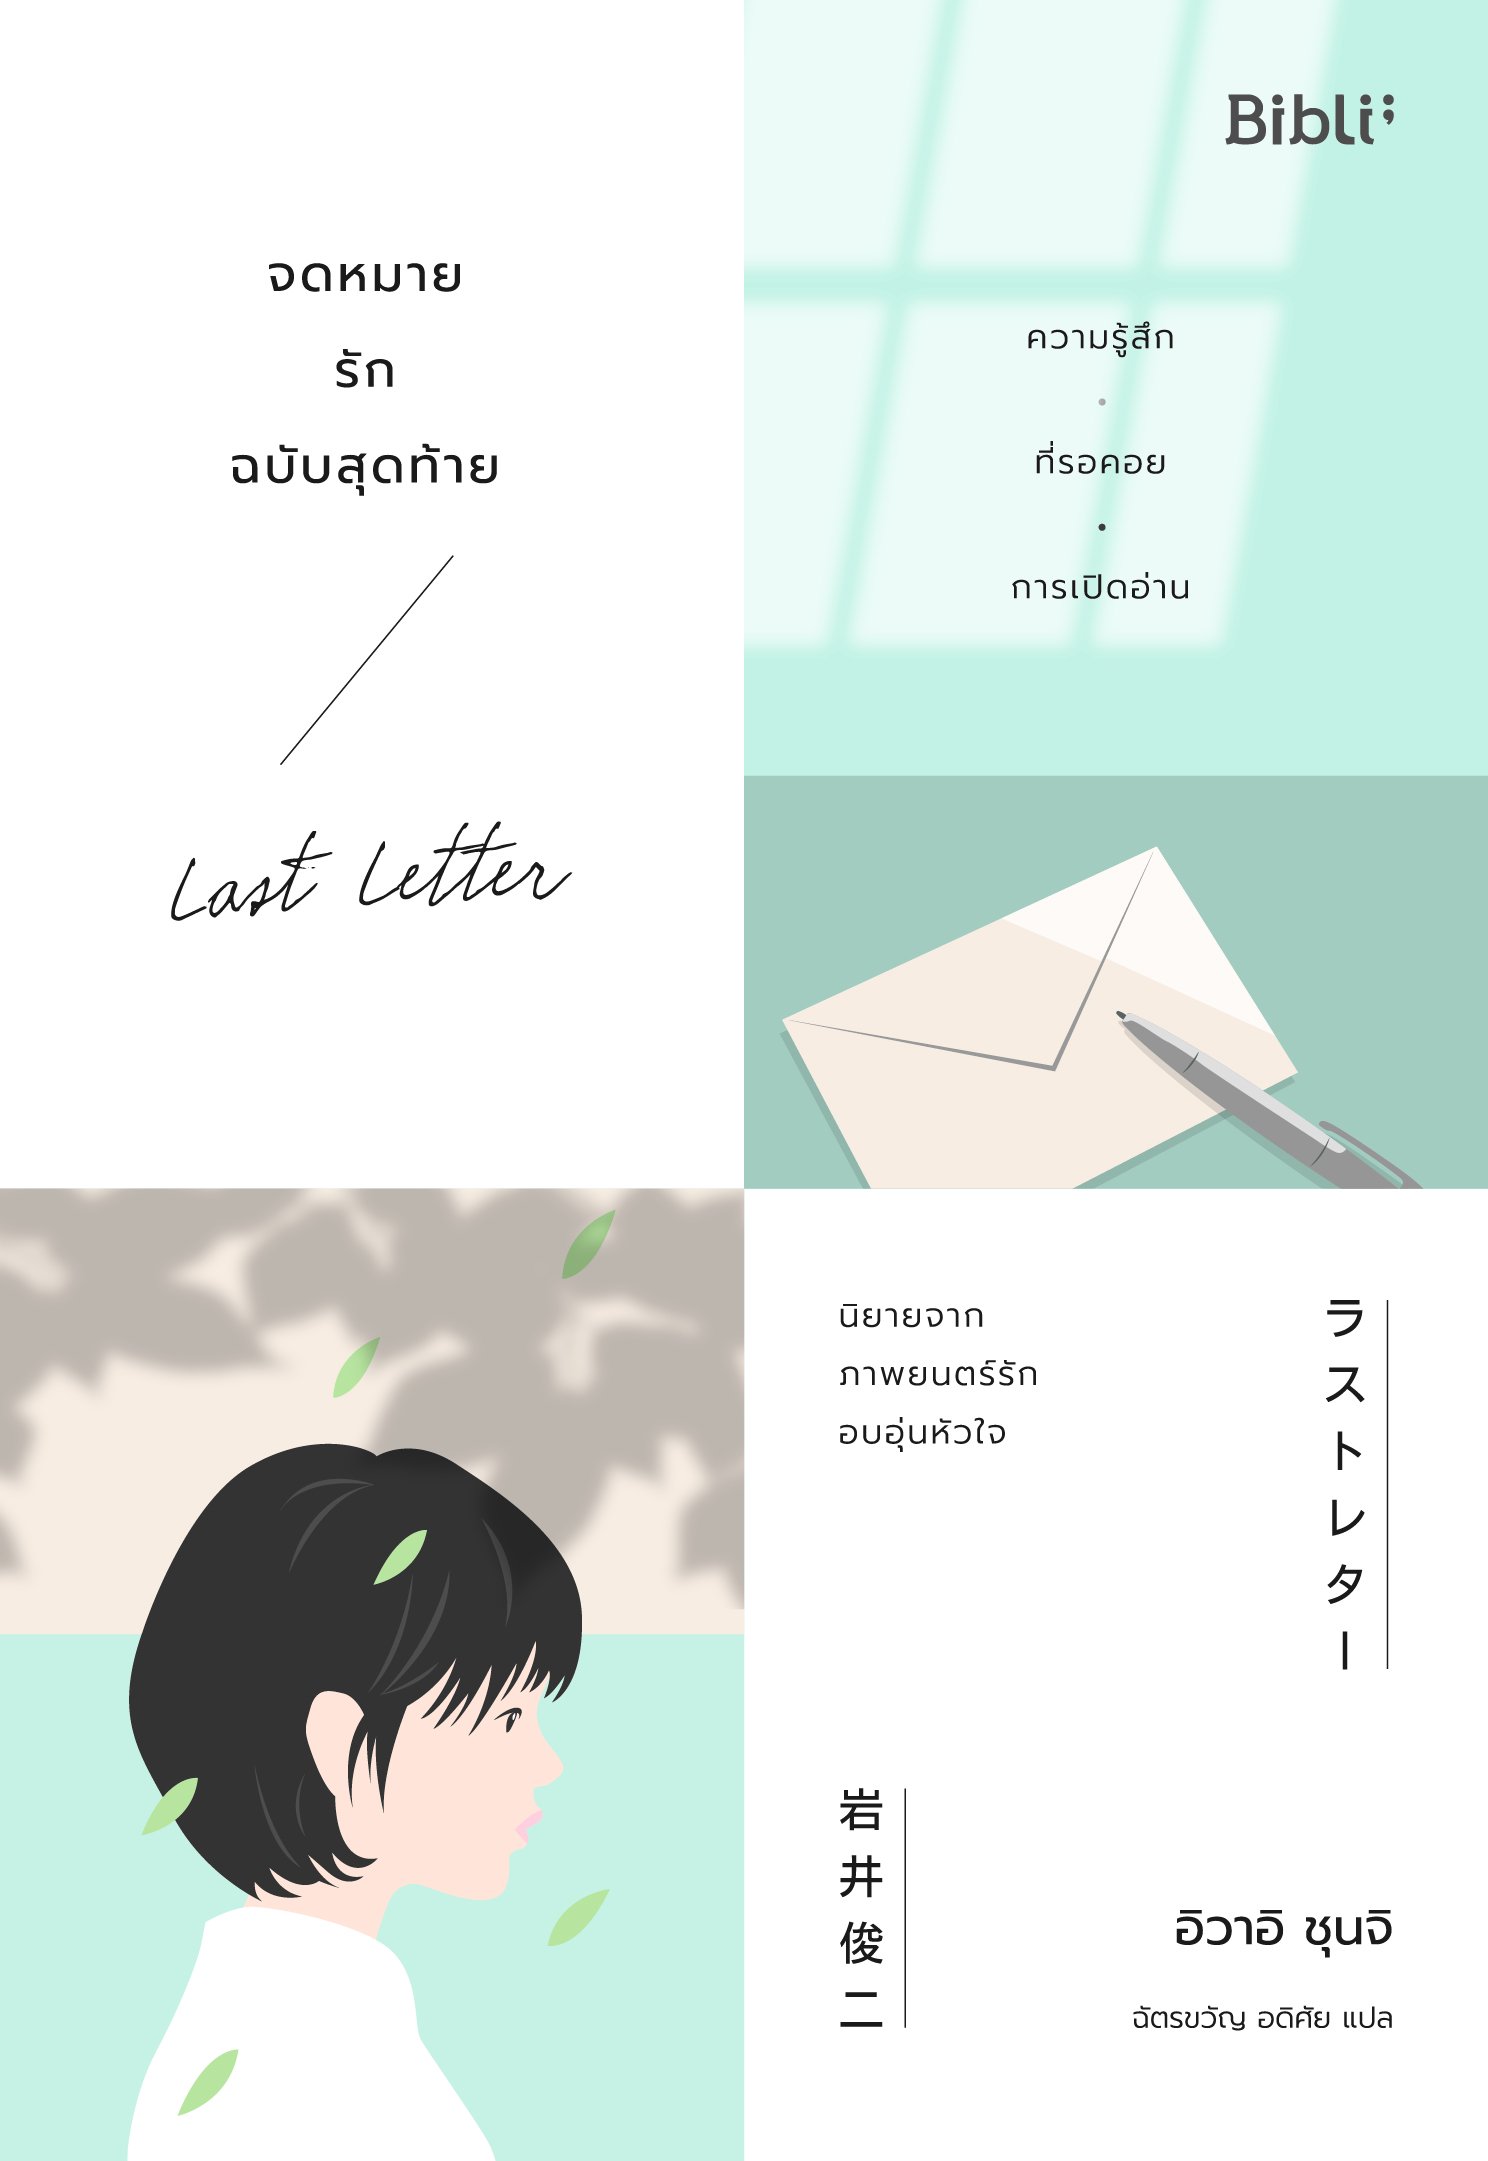 จดหมายรักฉบับสุดท้าย Last Letter ラストレター อิวาอิ ชุนจิ / Bibli